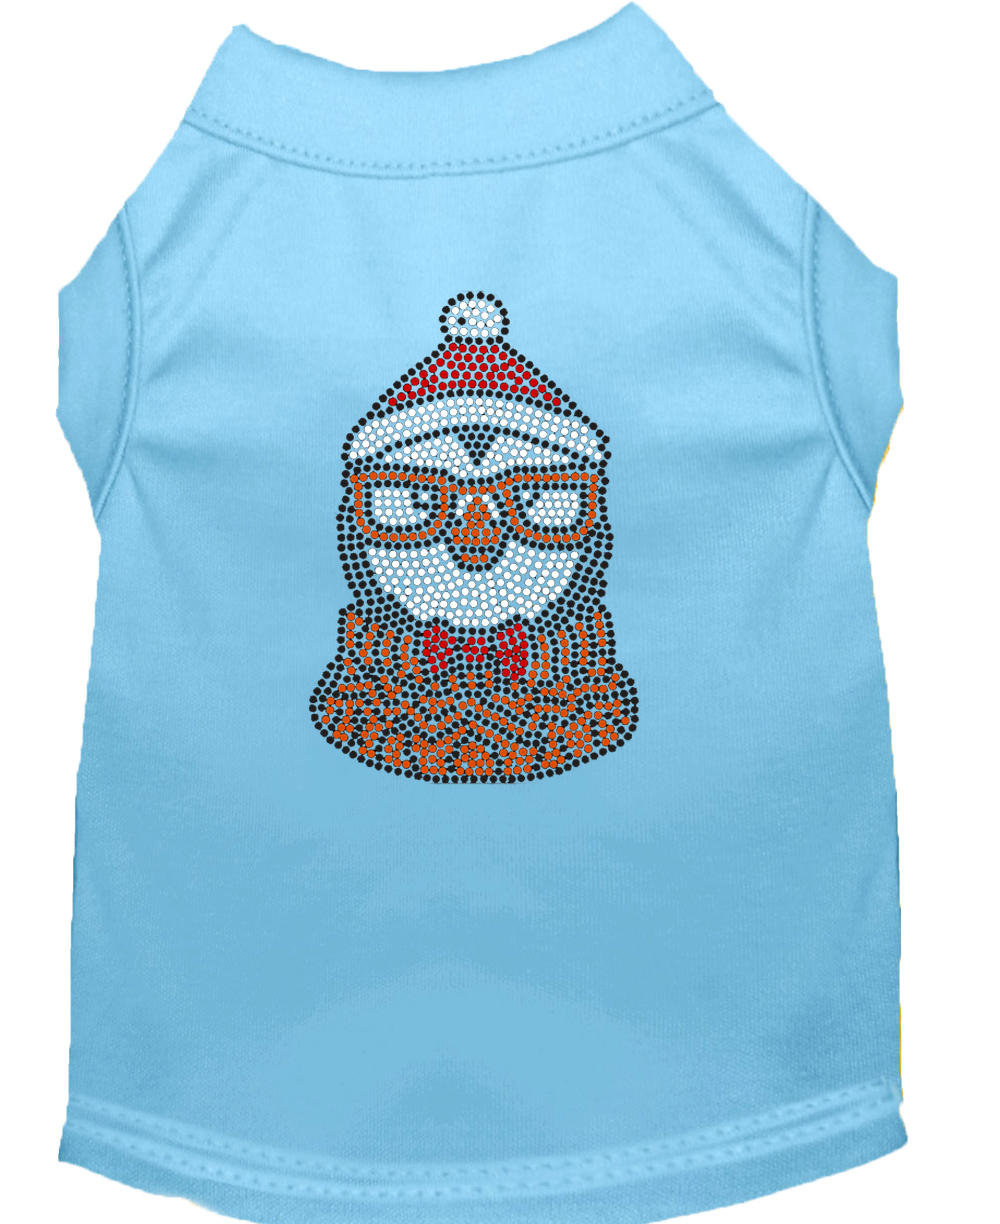 Hipster Penguin Rhinestone Dog Shirt Baby Blue Lg